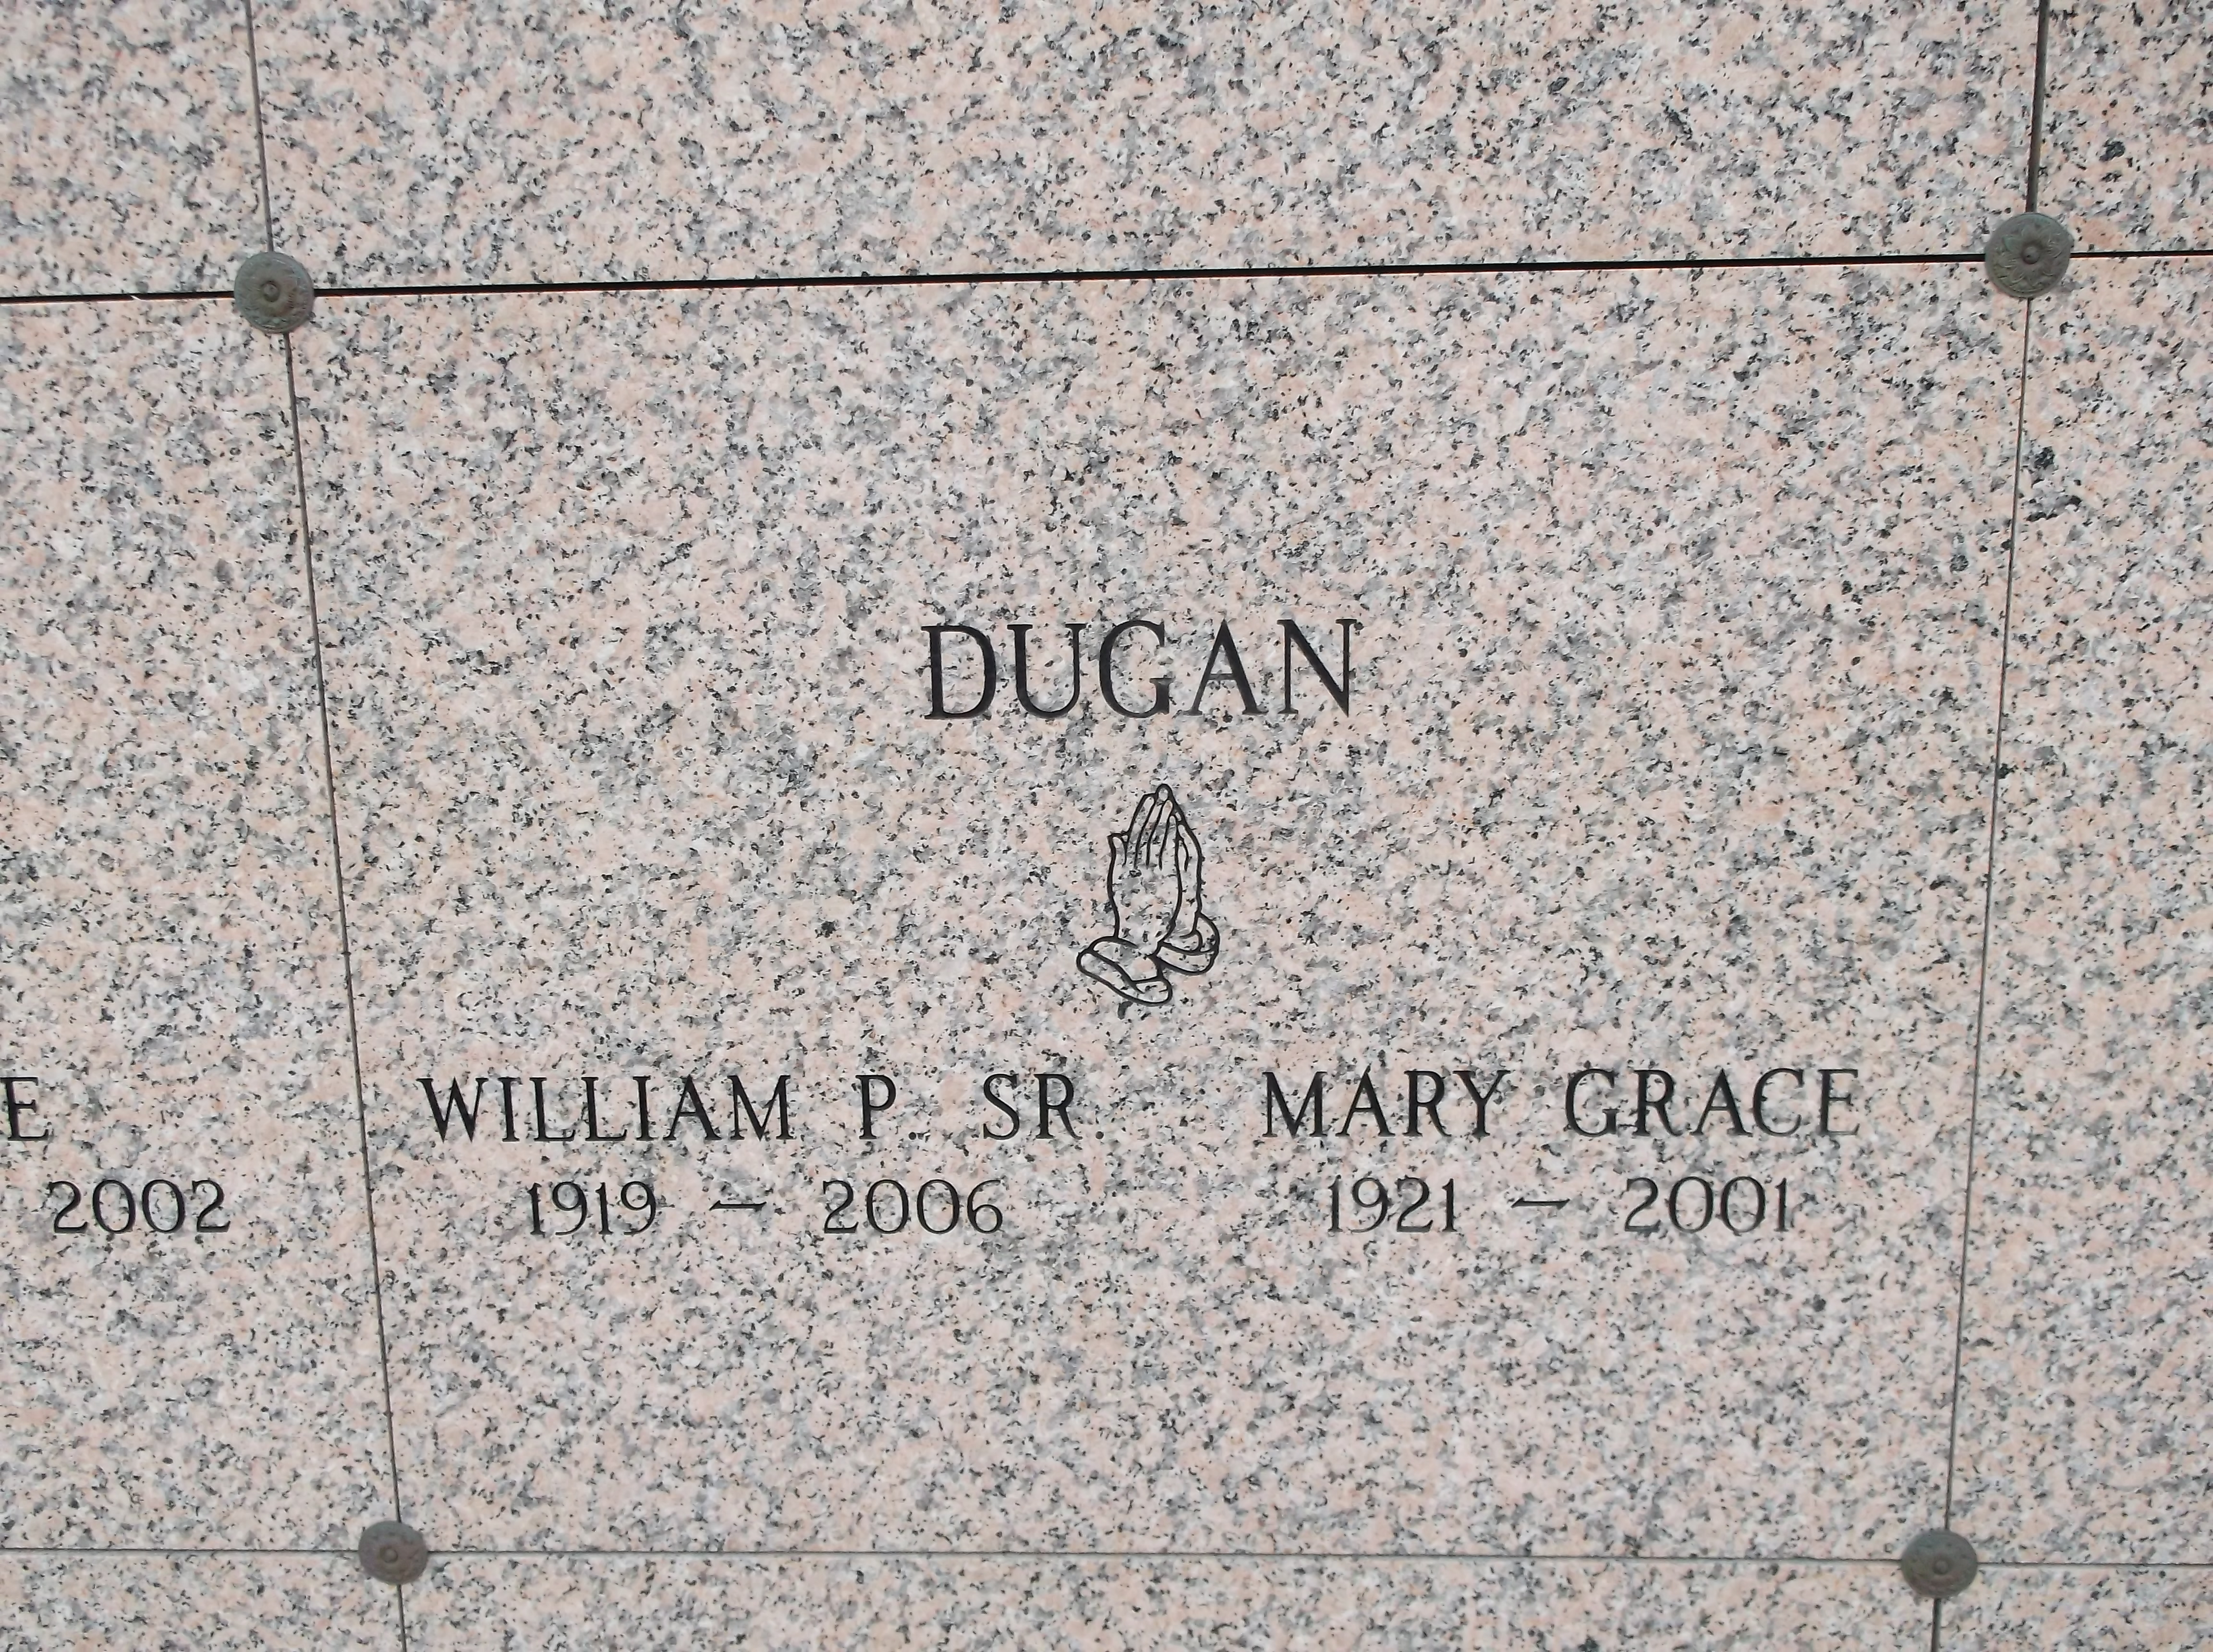 Mary Grace Dugan